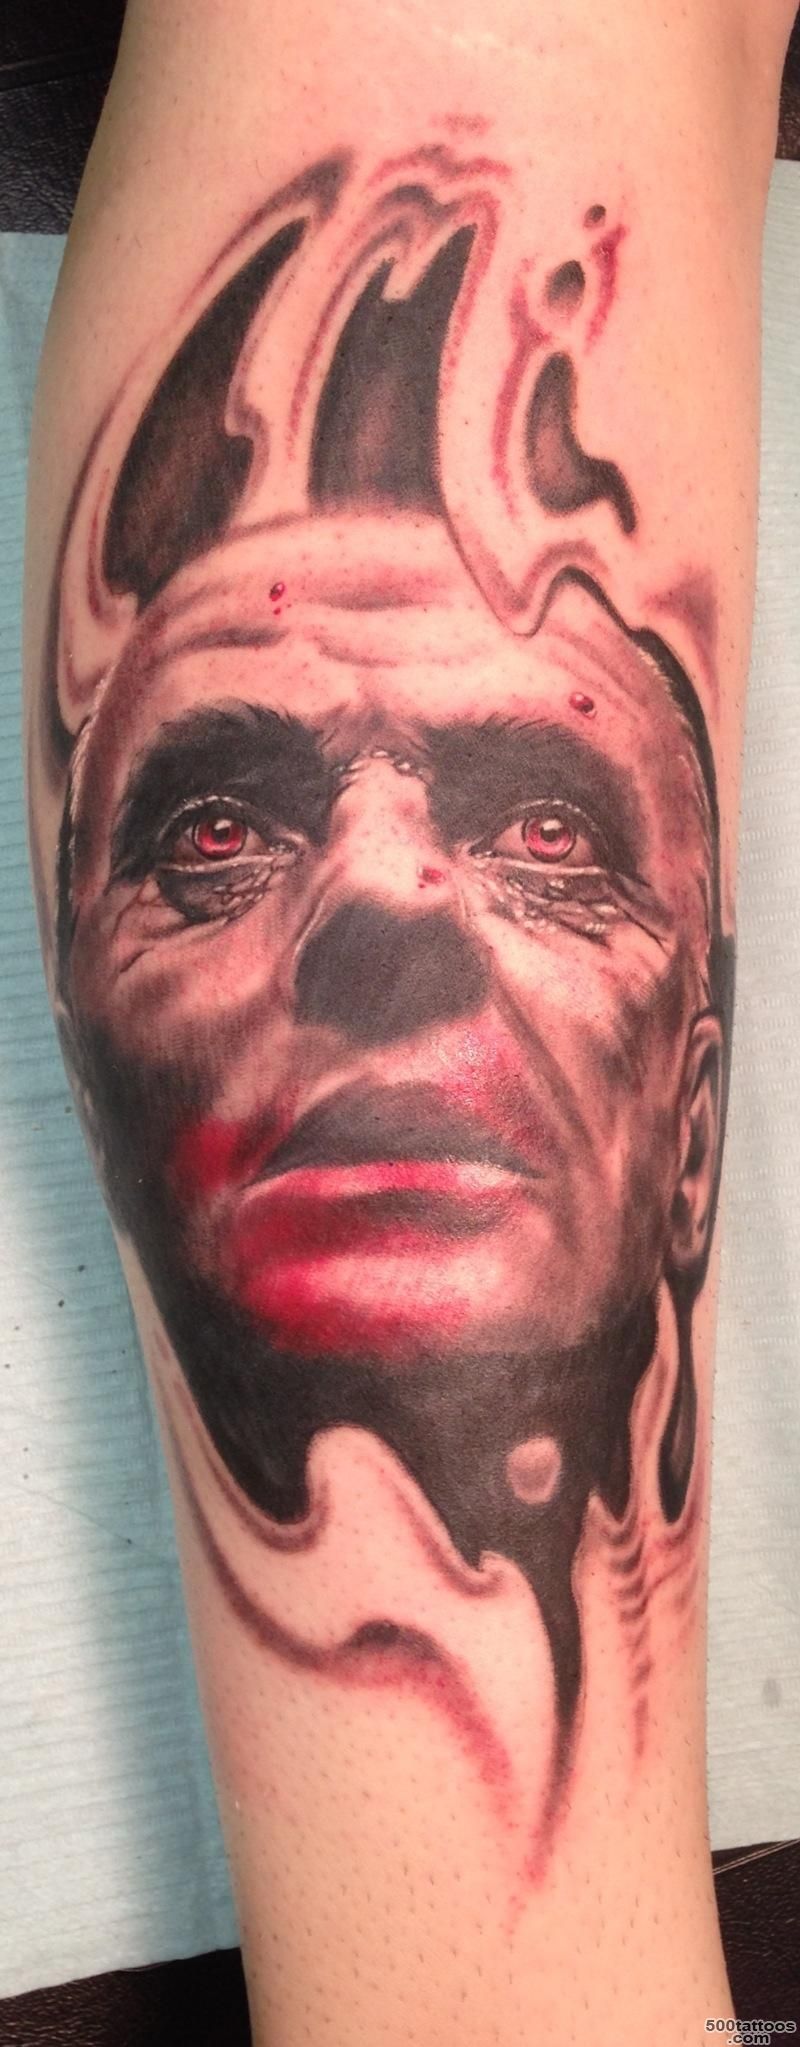 Hannibal Tattoo by Jason Elliot. Done at Tattoo Zone Rockaway, NJ ..._36